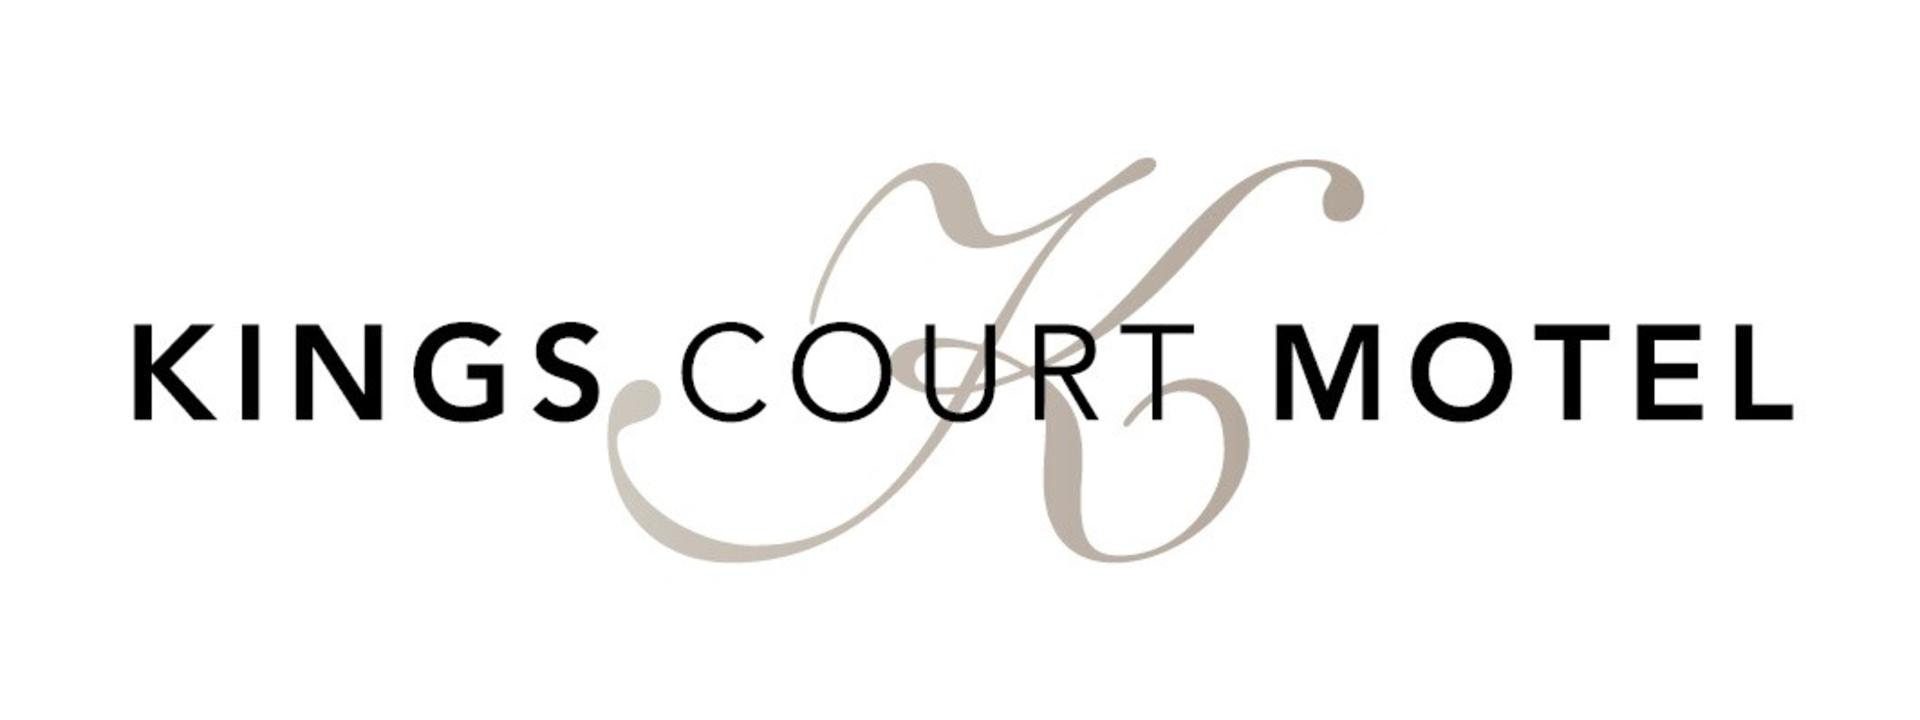 kings-court-logo.jpg